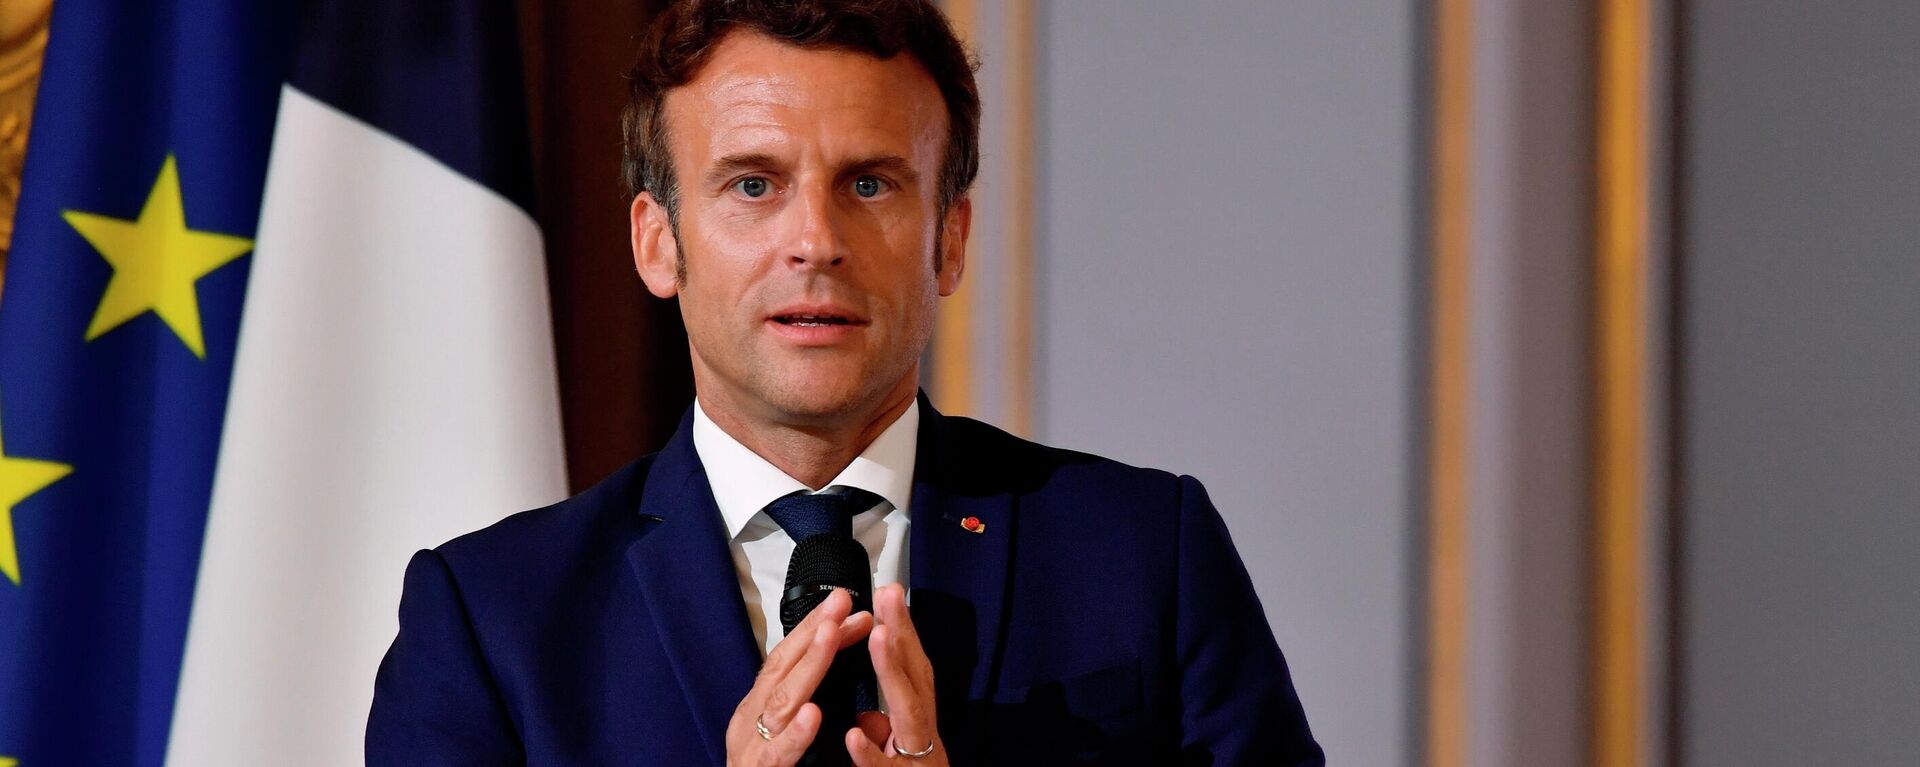 O presidente francês, Emmanuel Macron, participa de encontro no Palácio do Eliseu, em Paris, em 3 de junho de 2022 - Sputnik Brasil, 1920, 03.06.2022